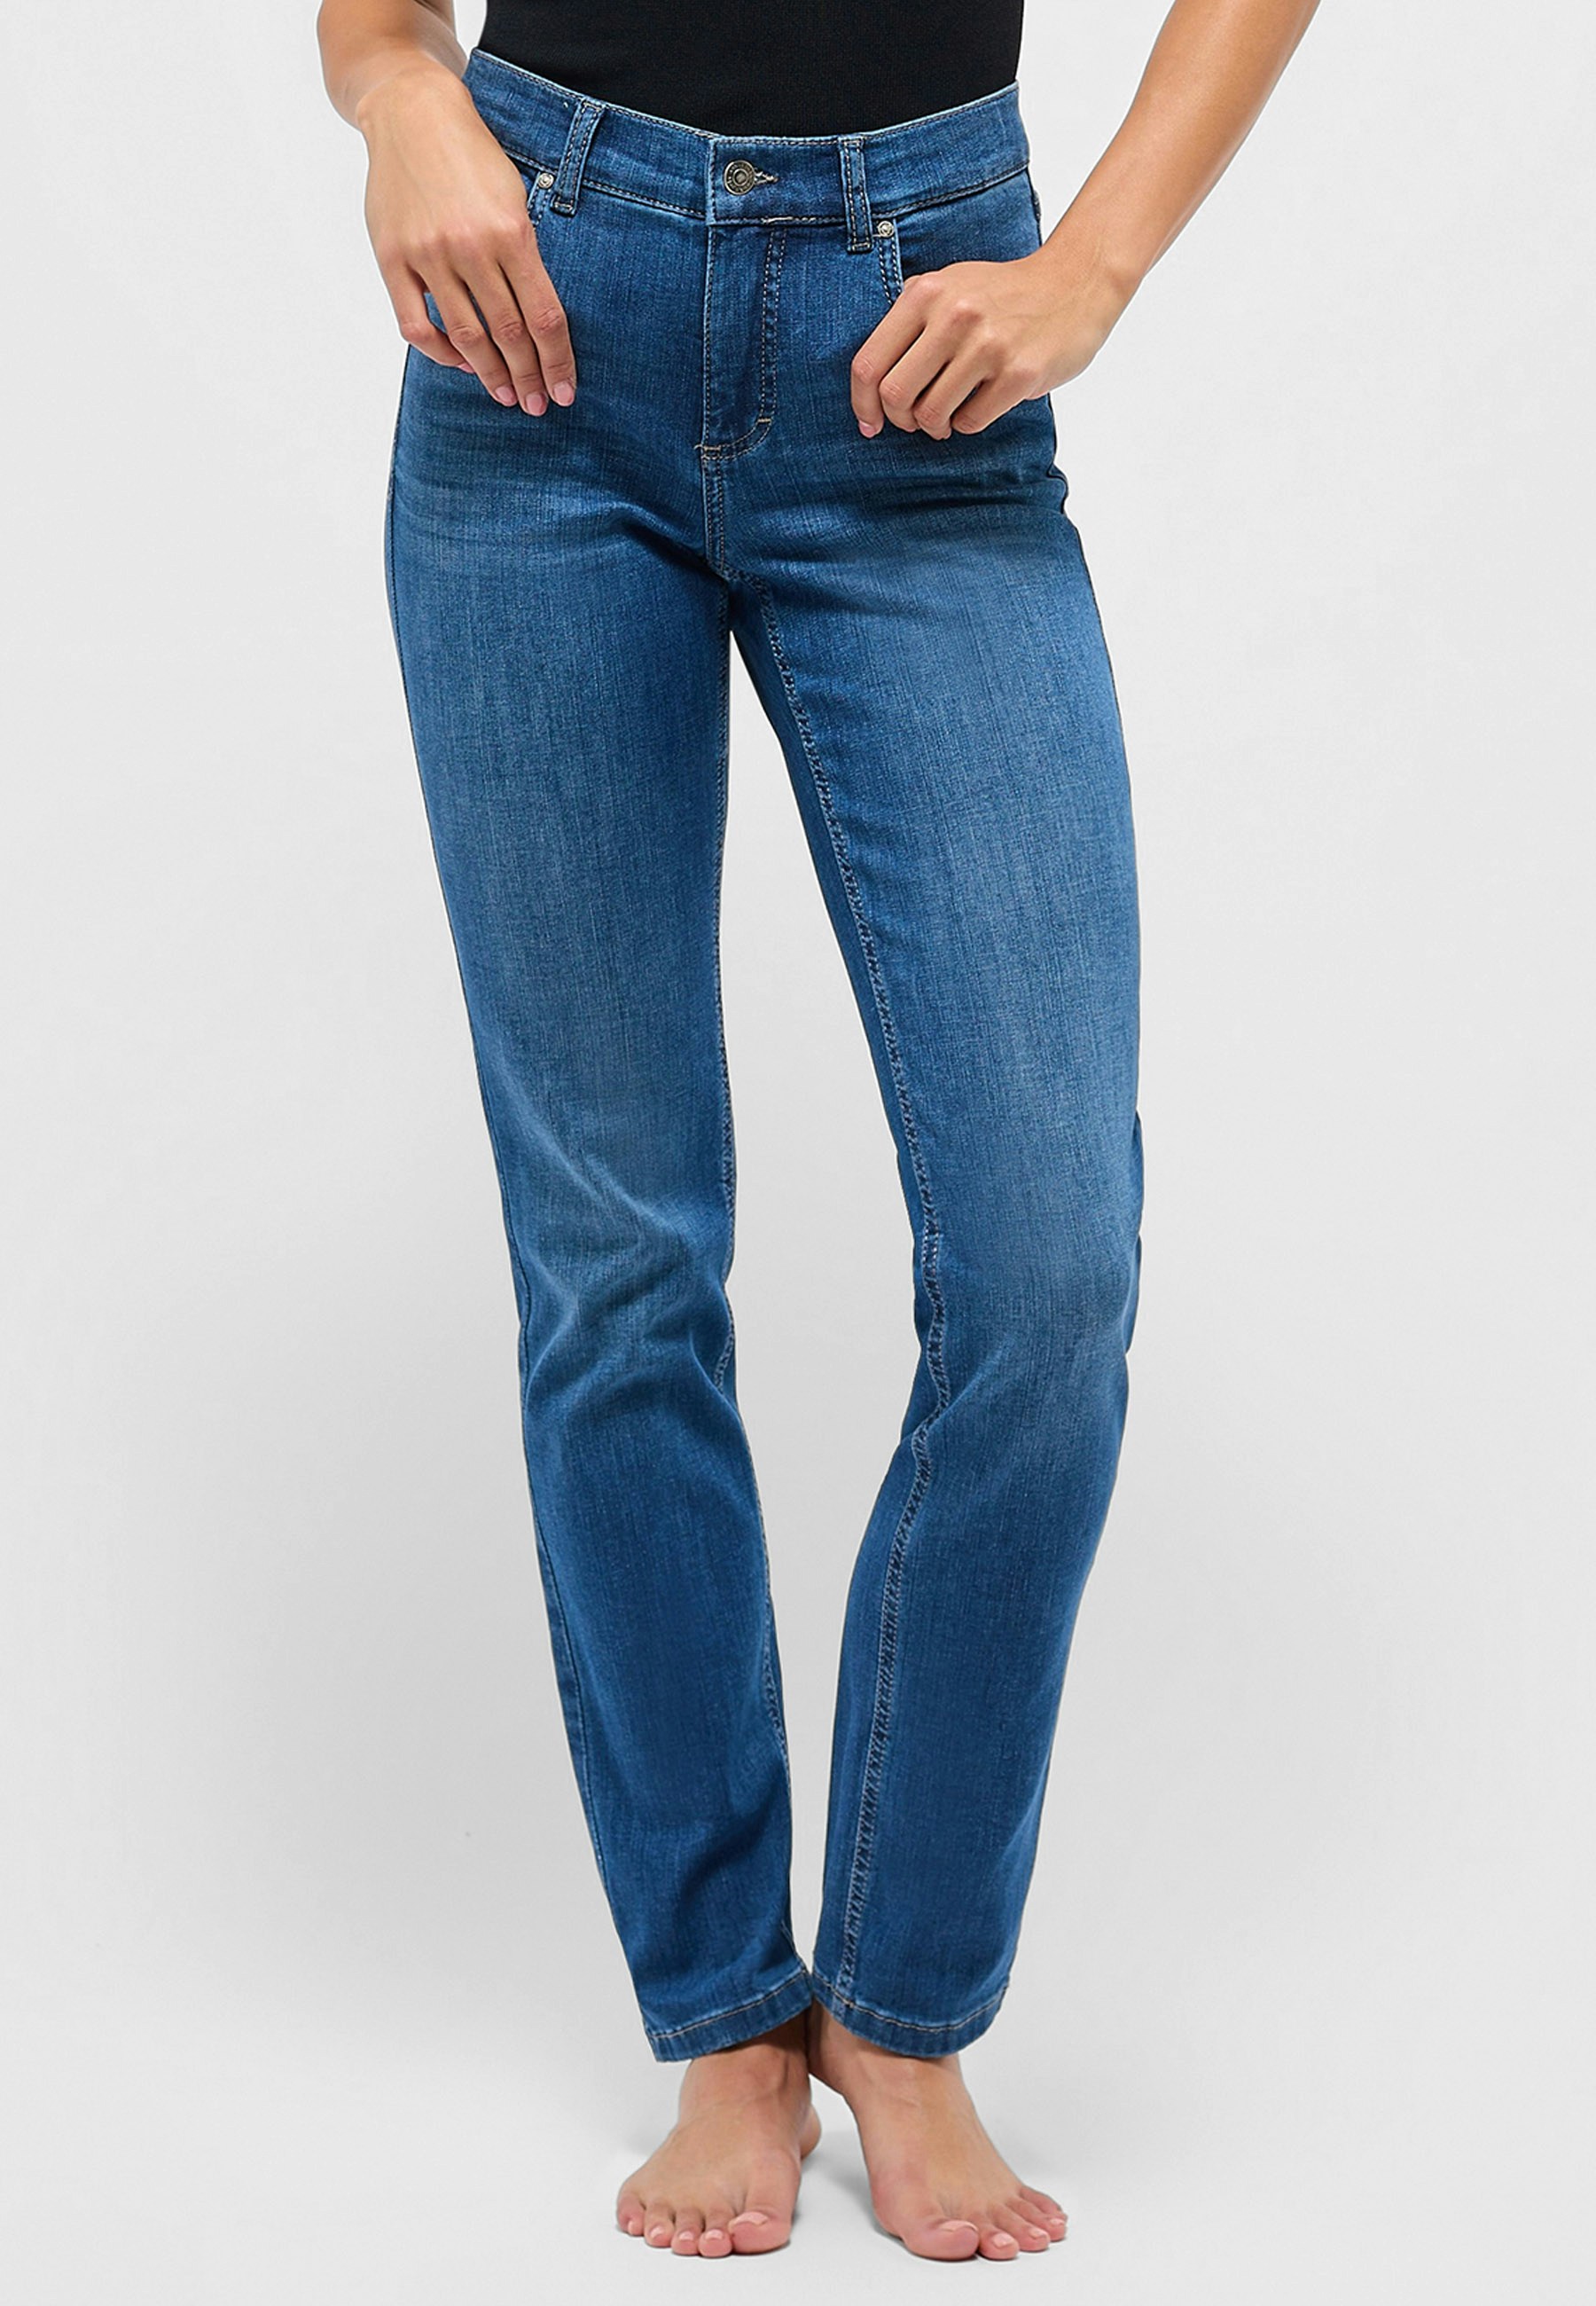 mit Denim | Cici authentischem Jeans Online-Shop Angels